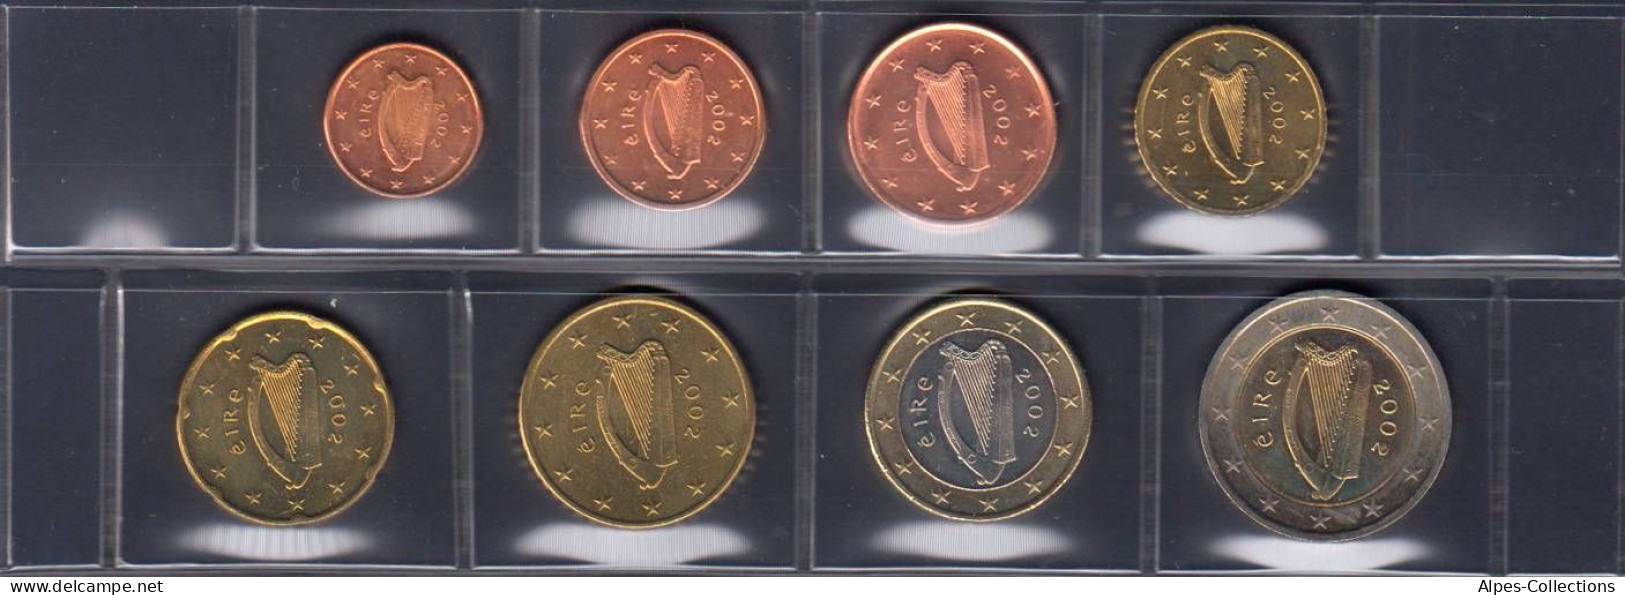 IRX2002.3 - SERIE IRLANDE - 2002 - 1 Cent à 2 Euros - Irlande